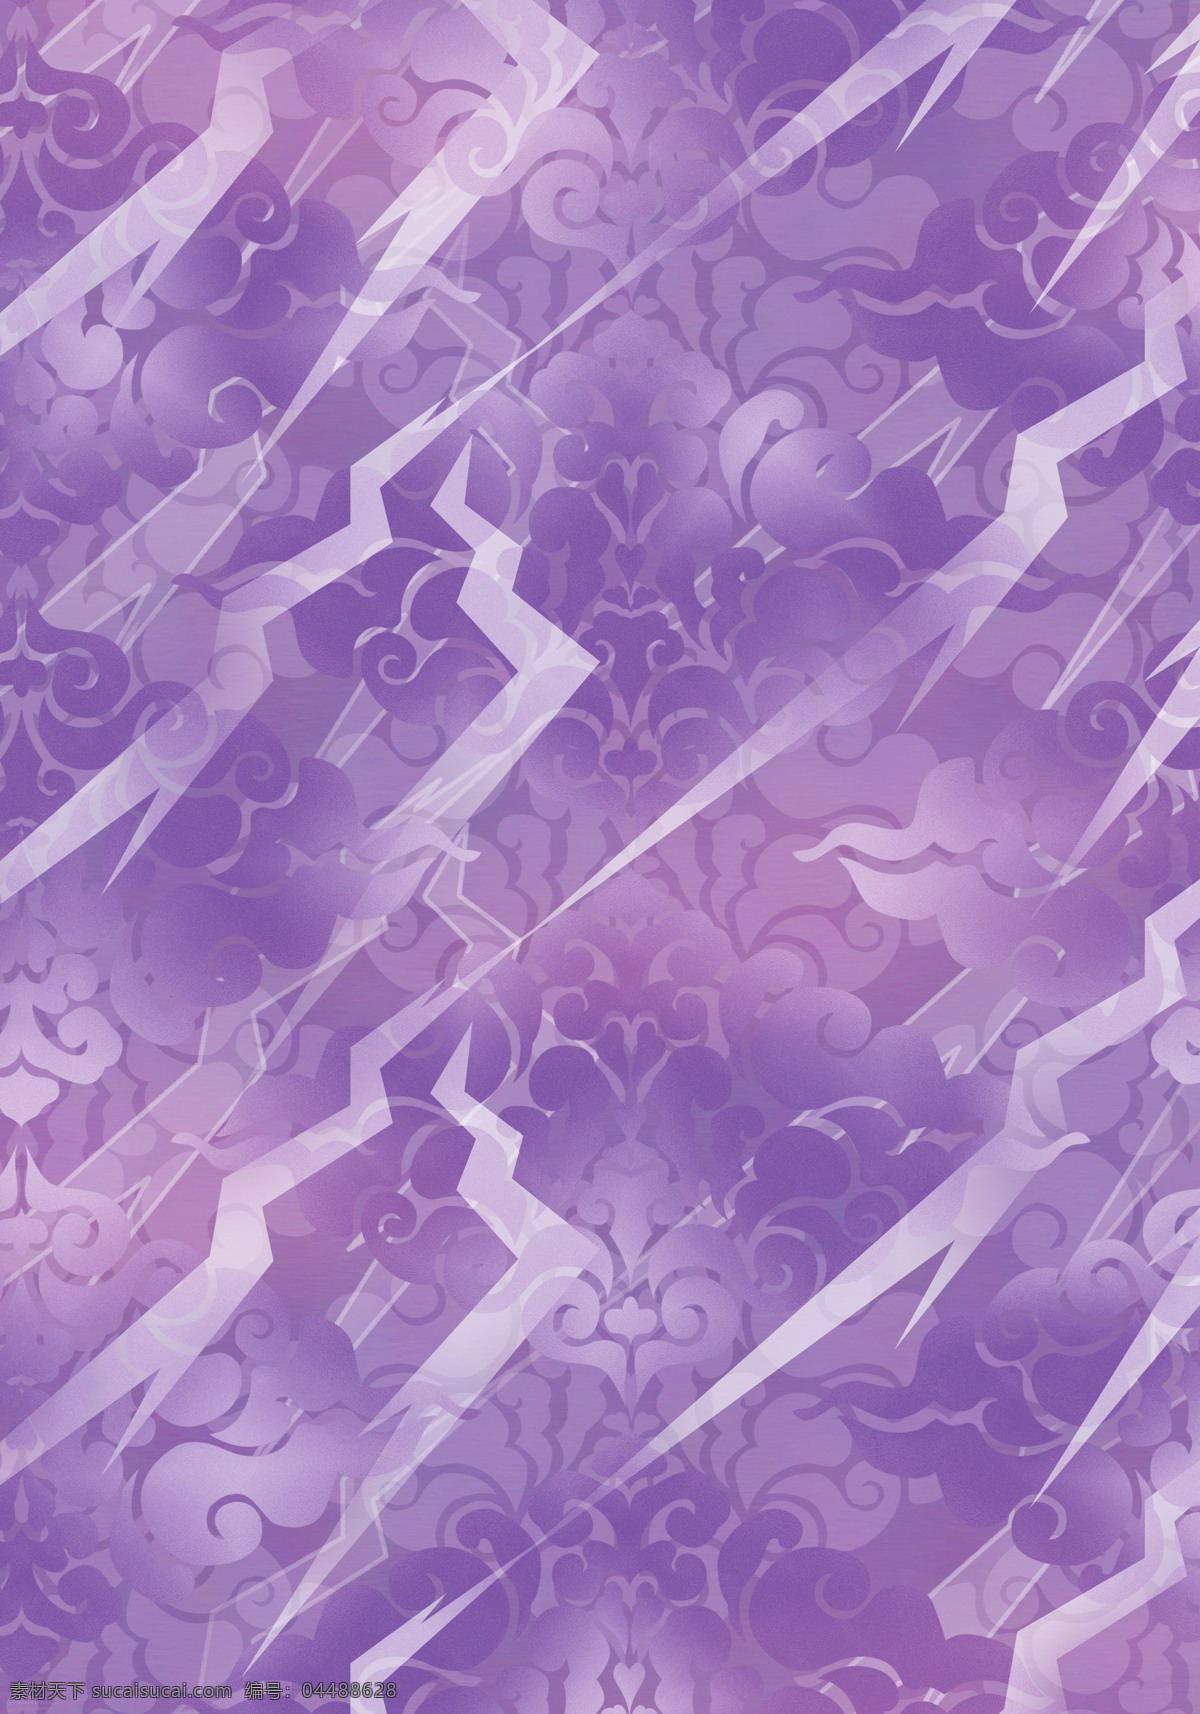 淡紫 传统 花纹 底 图 背景 背景底纹 背景素材 底纹花纹素材 漂亮 完美 唯美展板 底纹边框